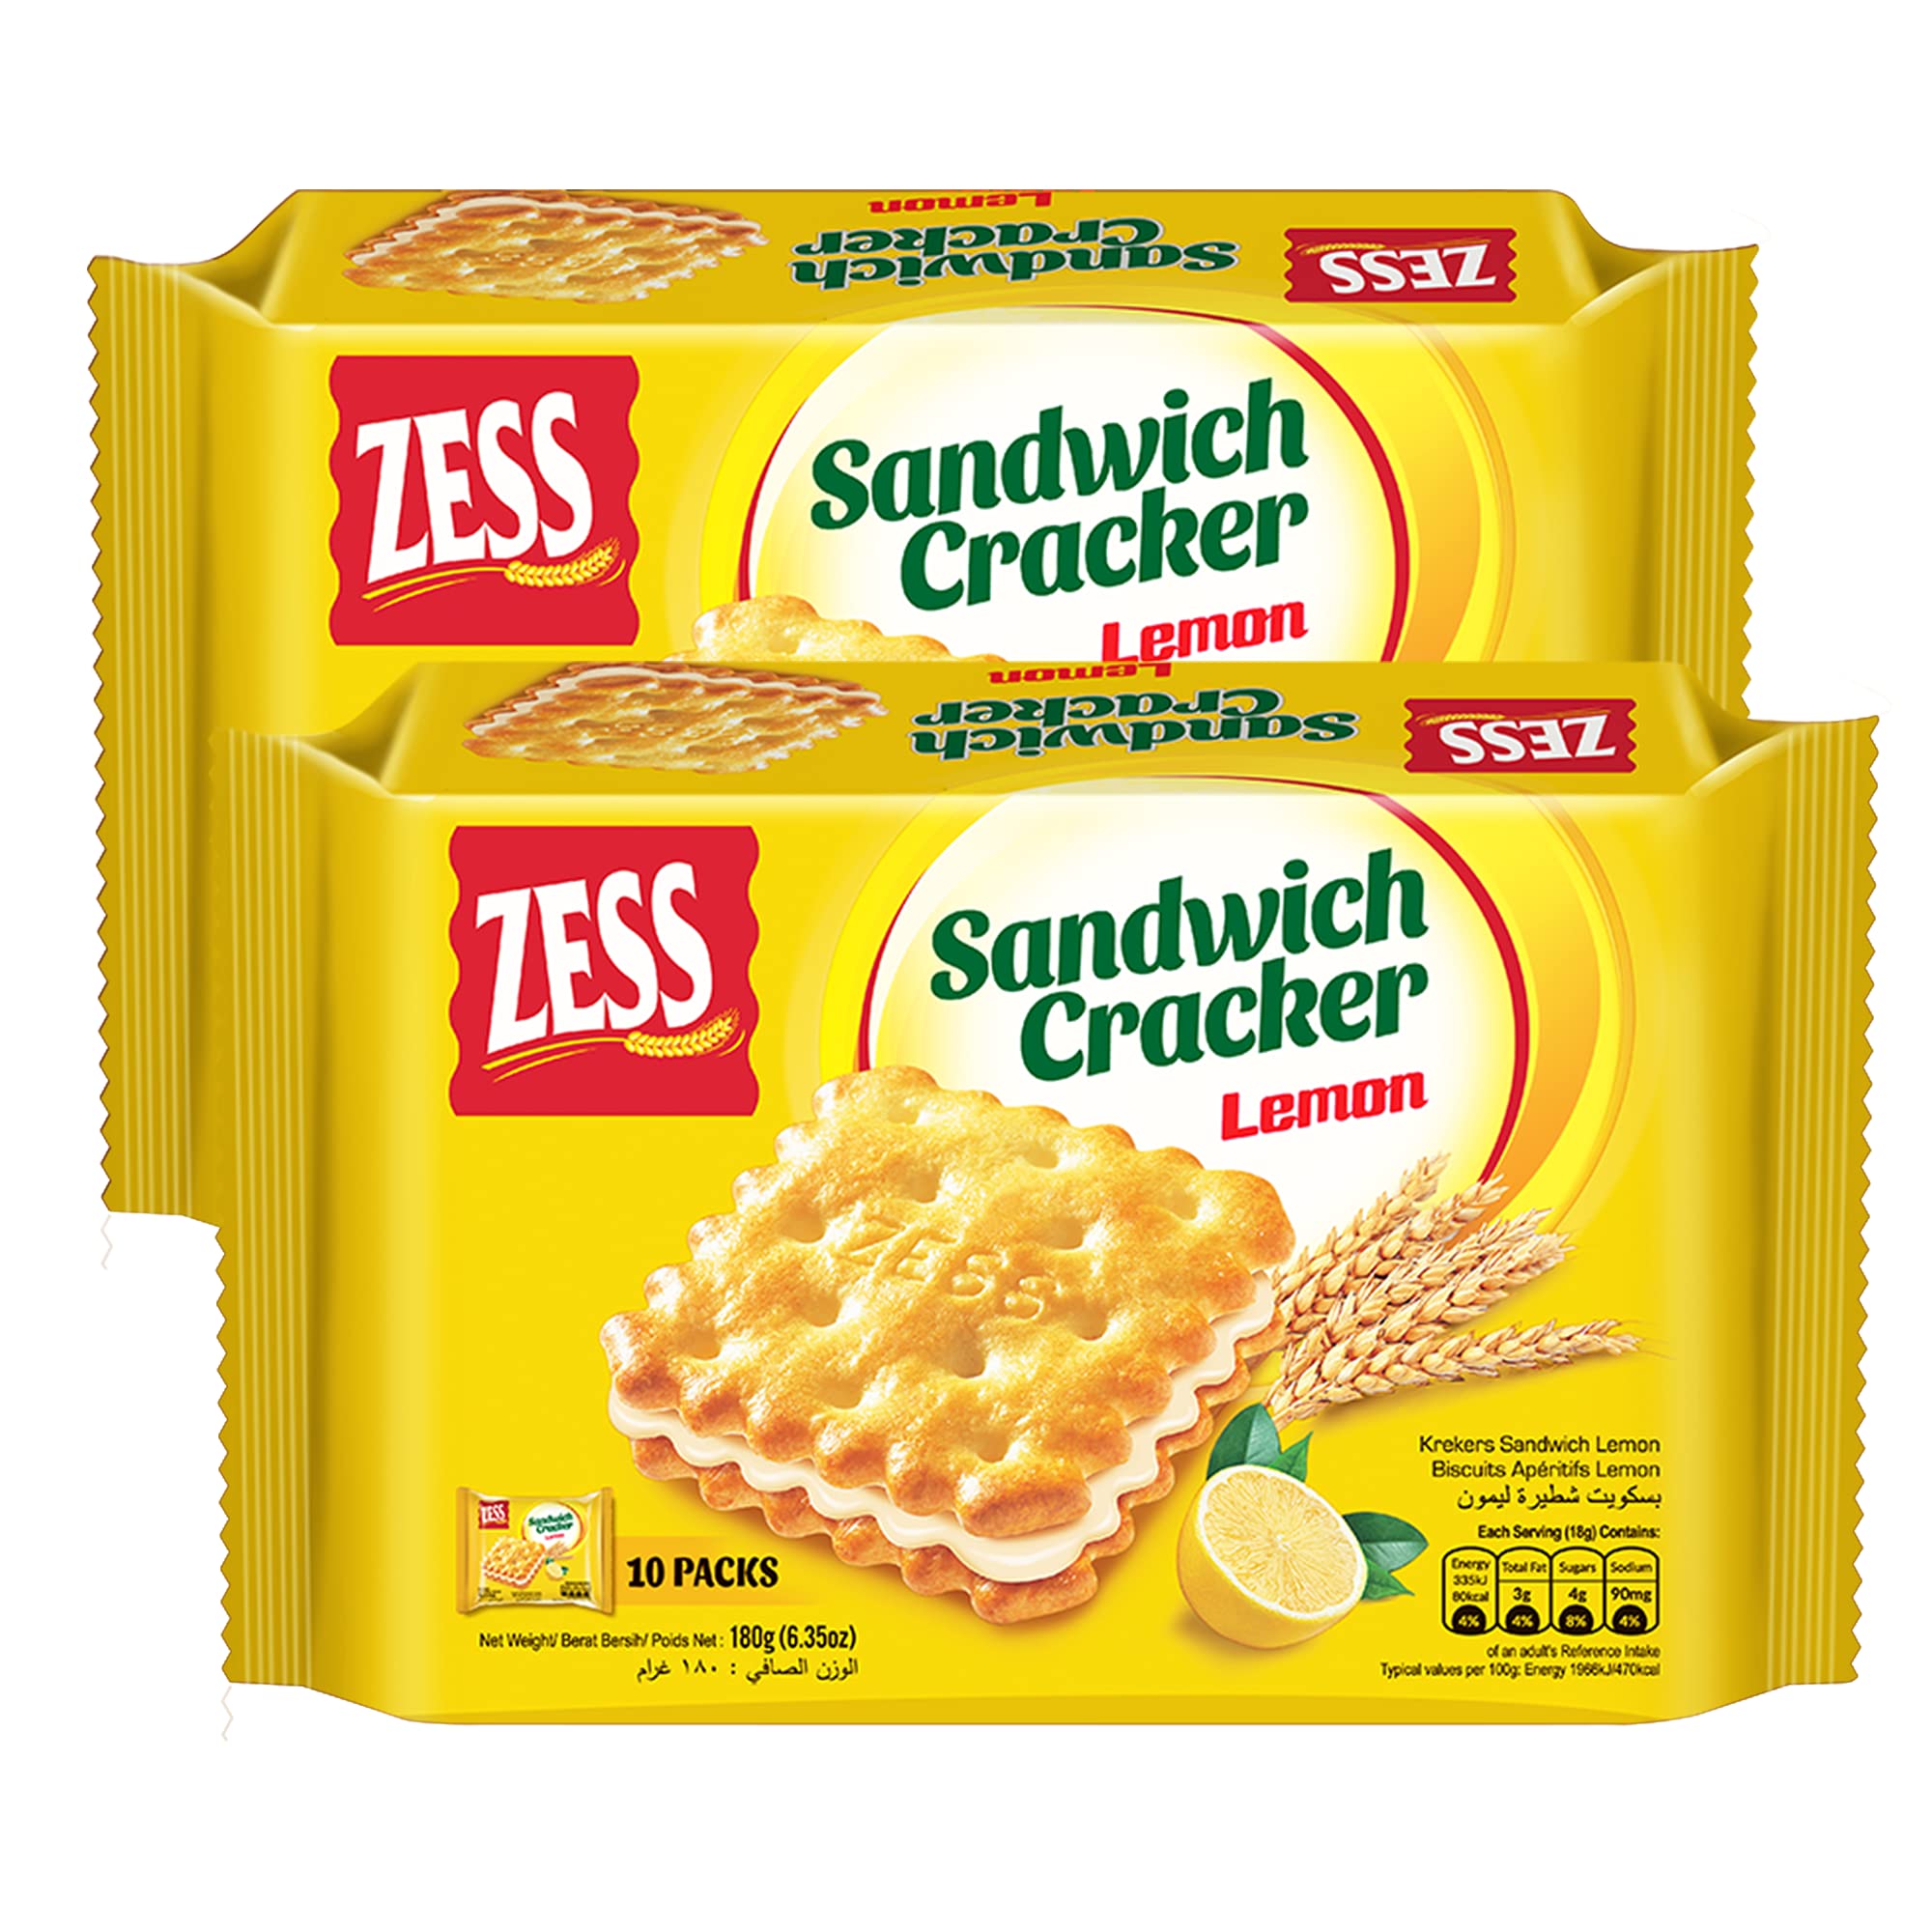 Zess Wheat Flour Snack Sandwich Cracker Cookie, Lemon. Low Calorie, Asian, 180g 6.4oz. 2 Pack